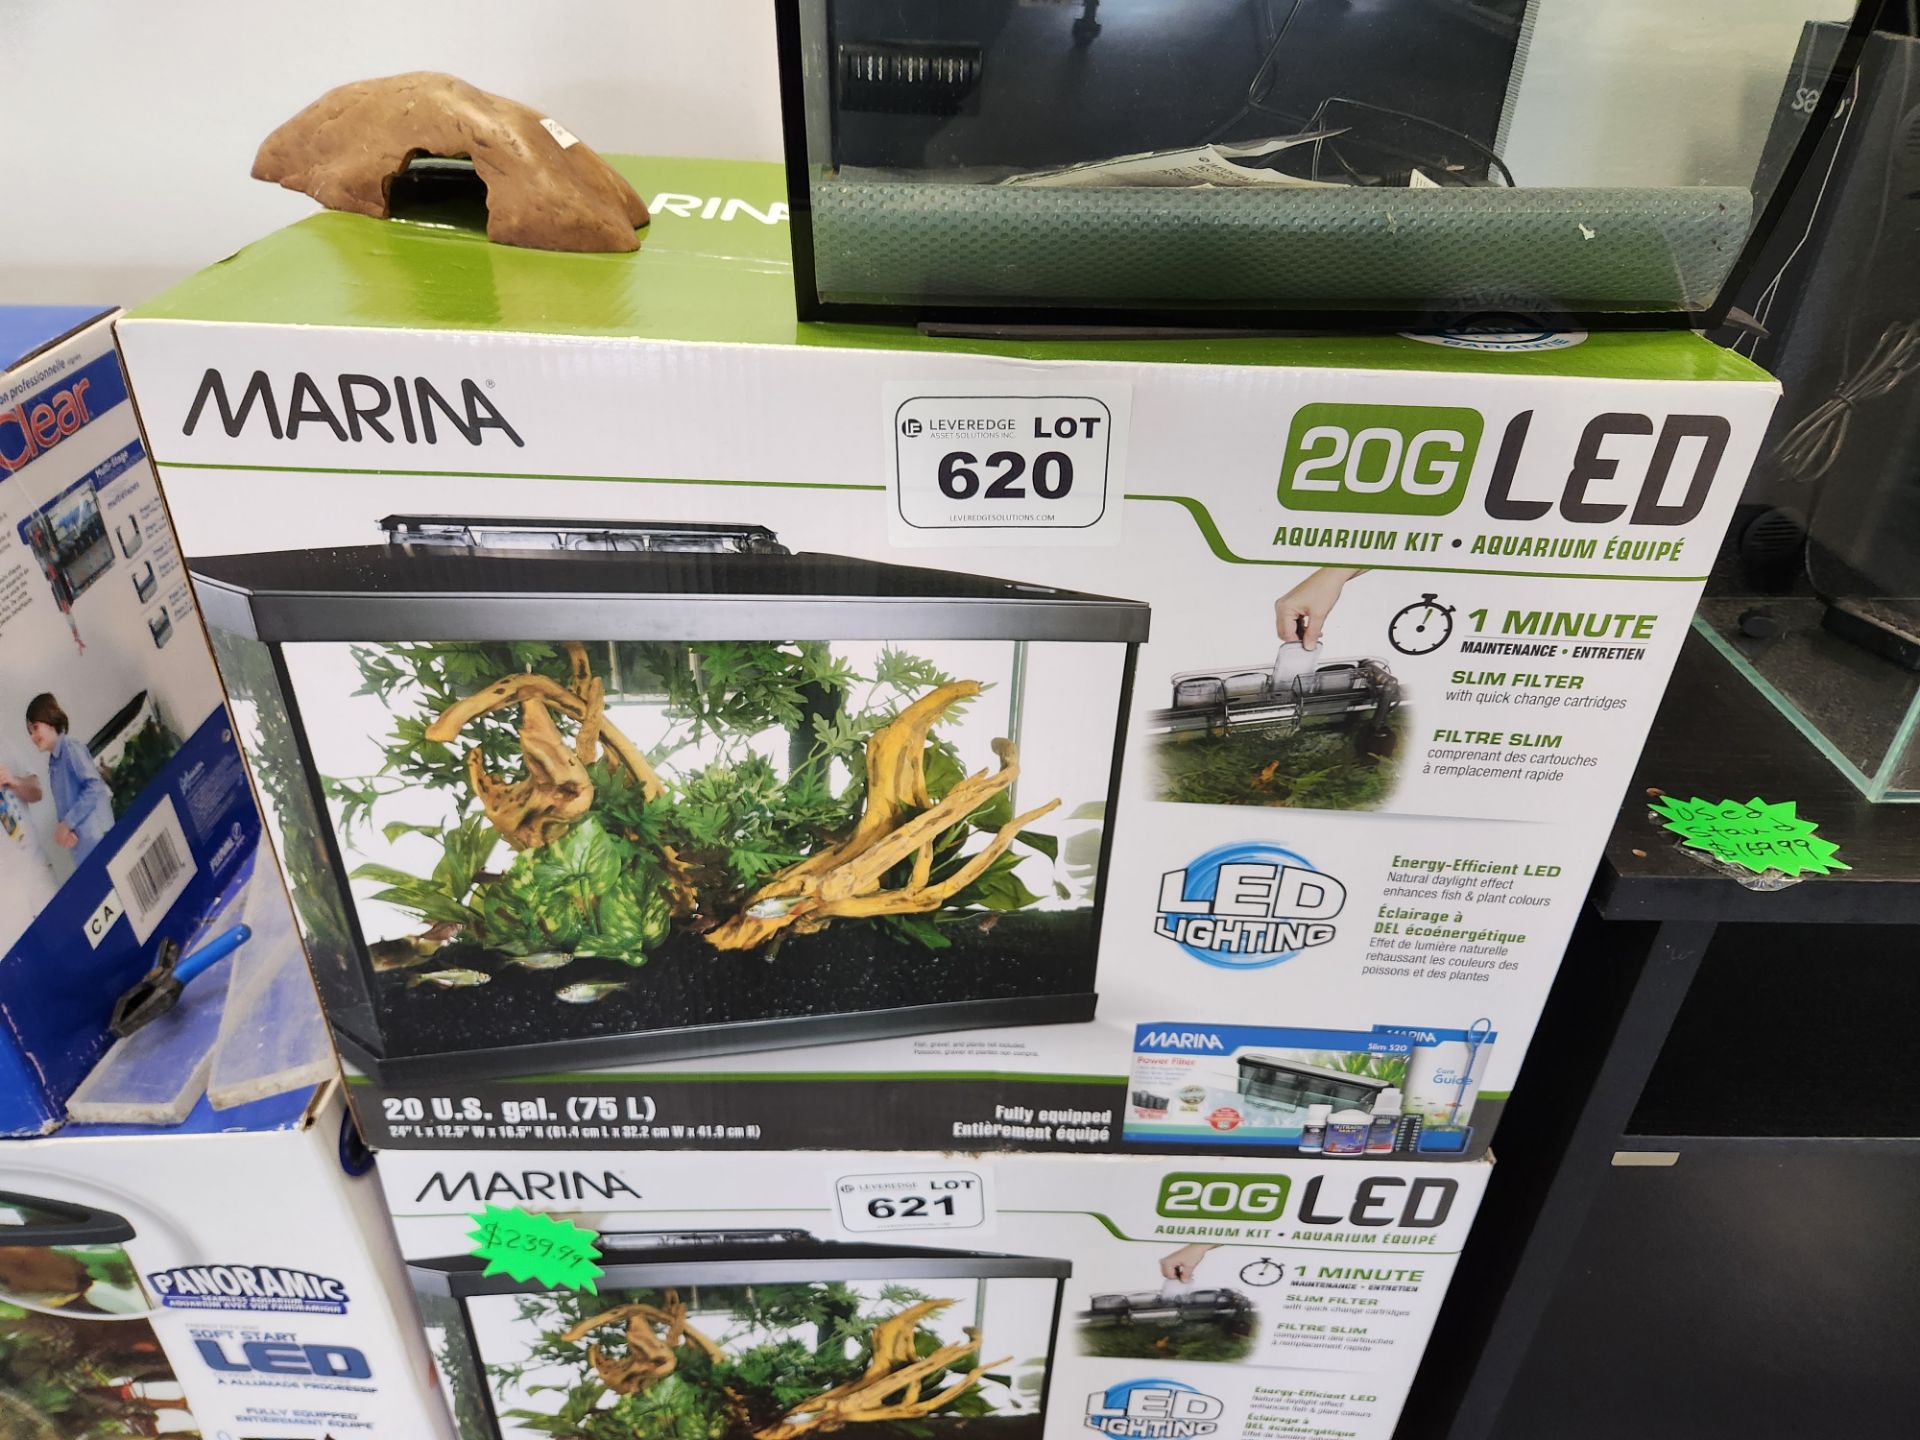 Marina 20G LED Aquarium Kit